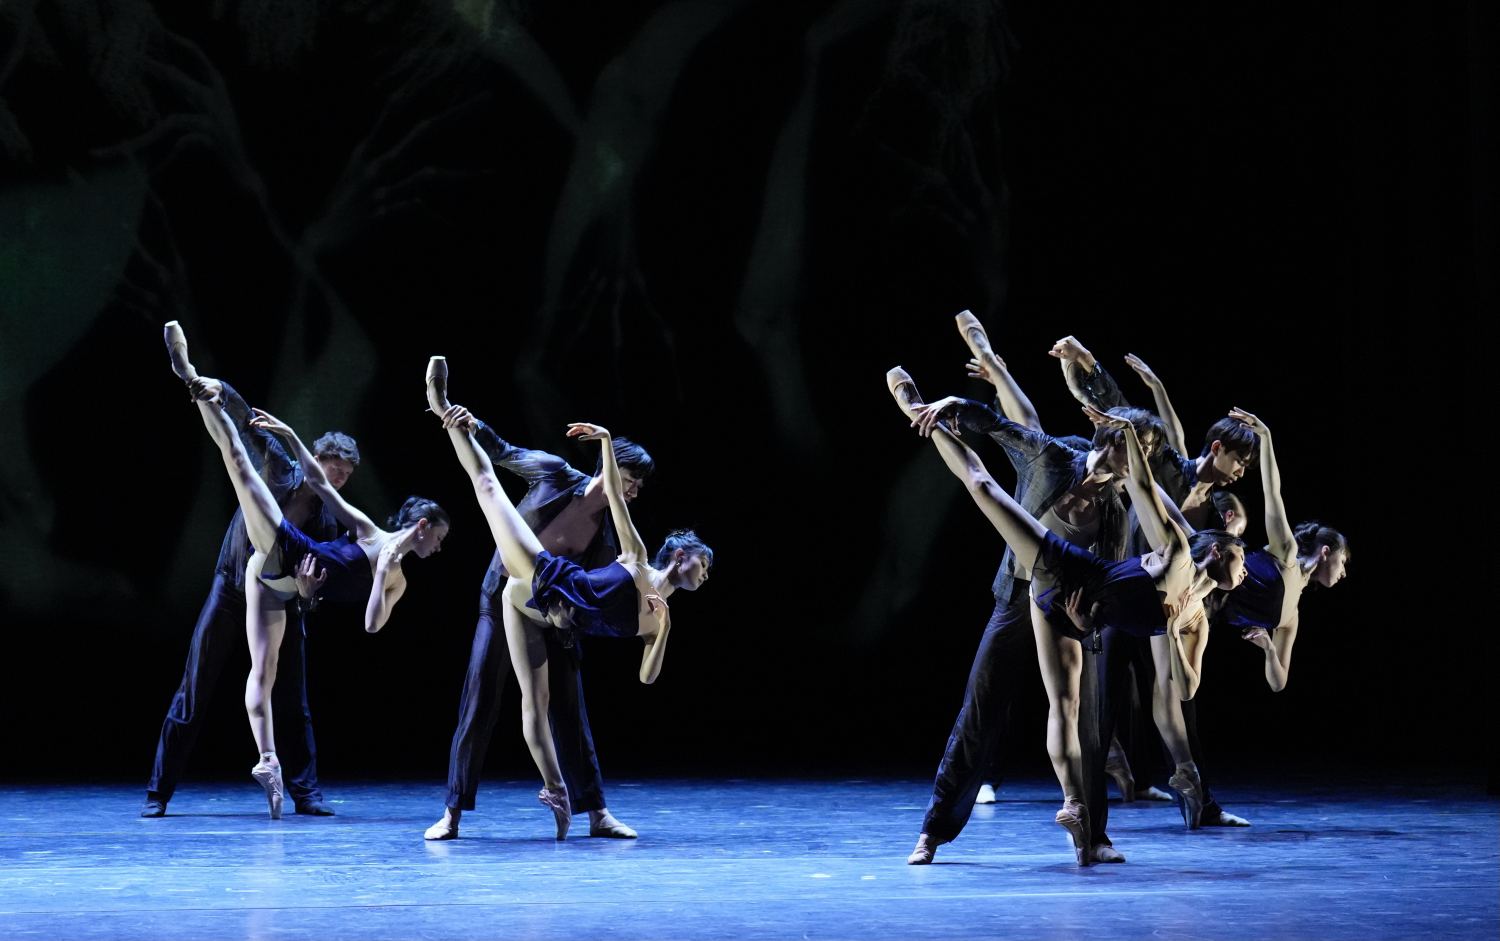 2. Ensemble, “Children of the Night” by A.Abdukarimov, State Ballet Berlin 2022 © O.Kollmannsperger